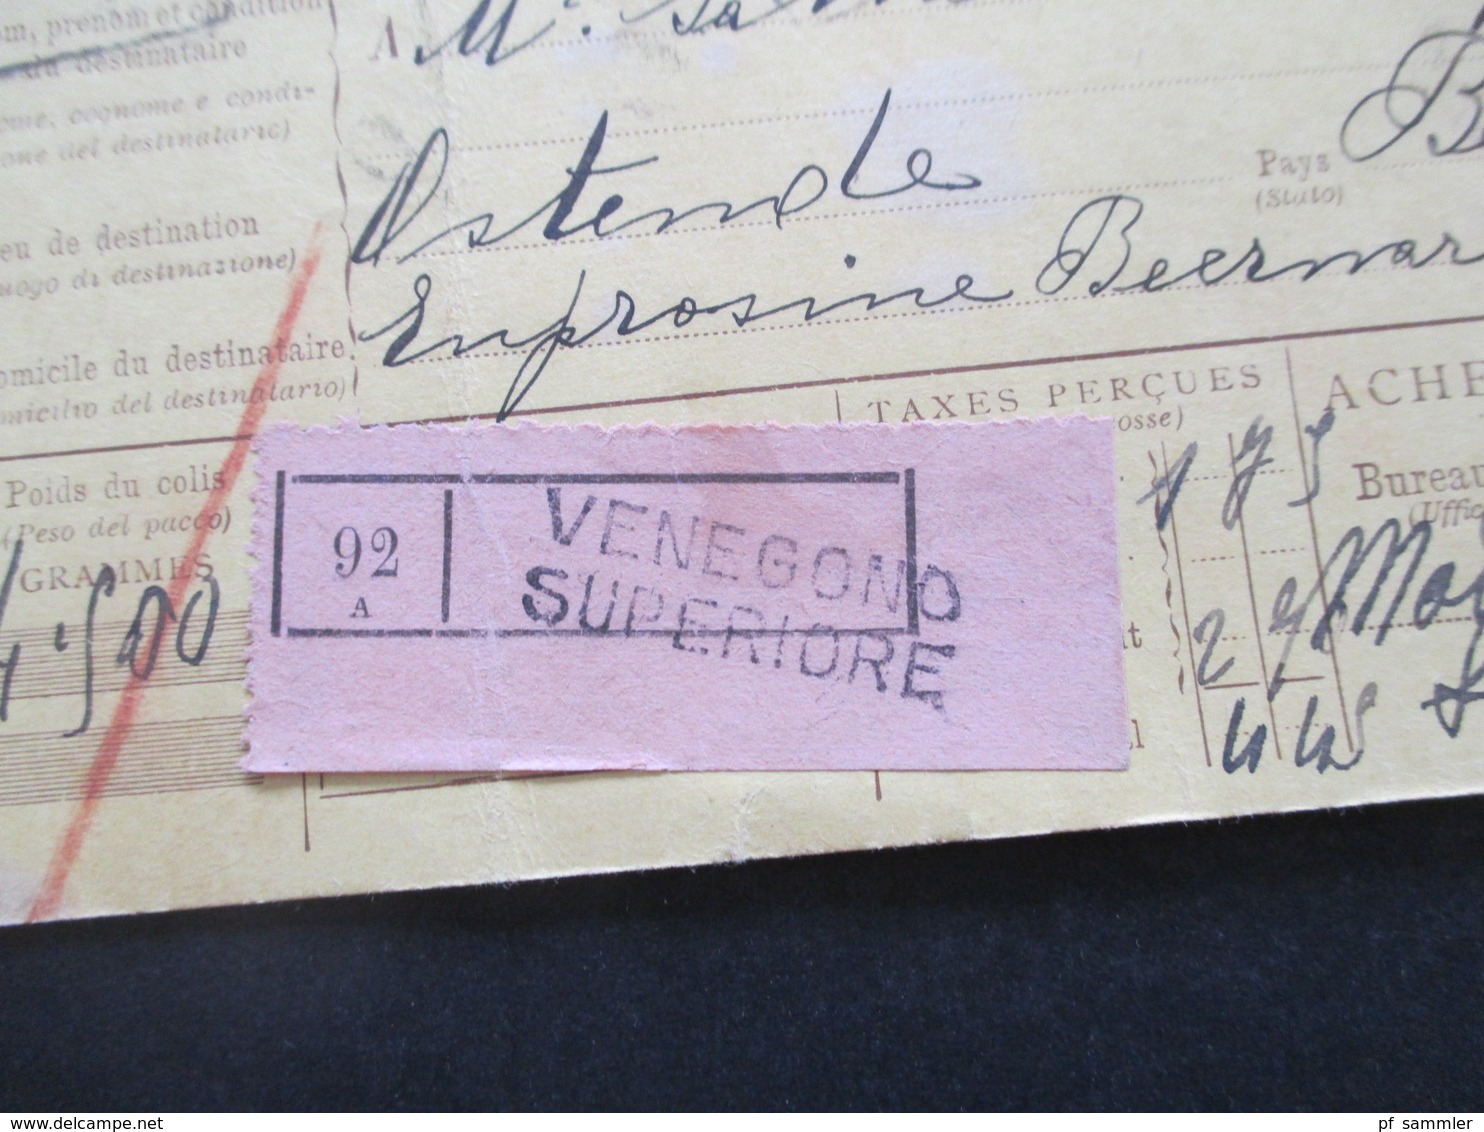 Italien 1913 Auslandspaketkarte Zusatzfrankaturen, Viele Stempel Venegono Superiore - Ostende Klebezettel Remboursement - Paketmarken